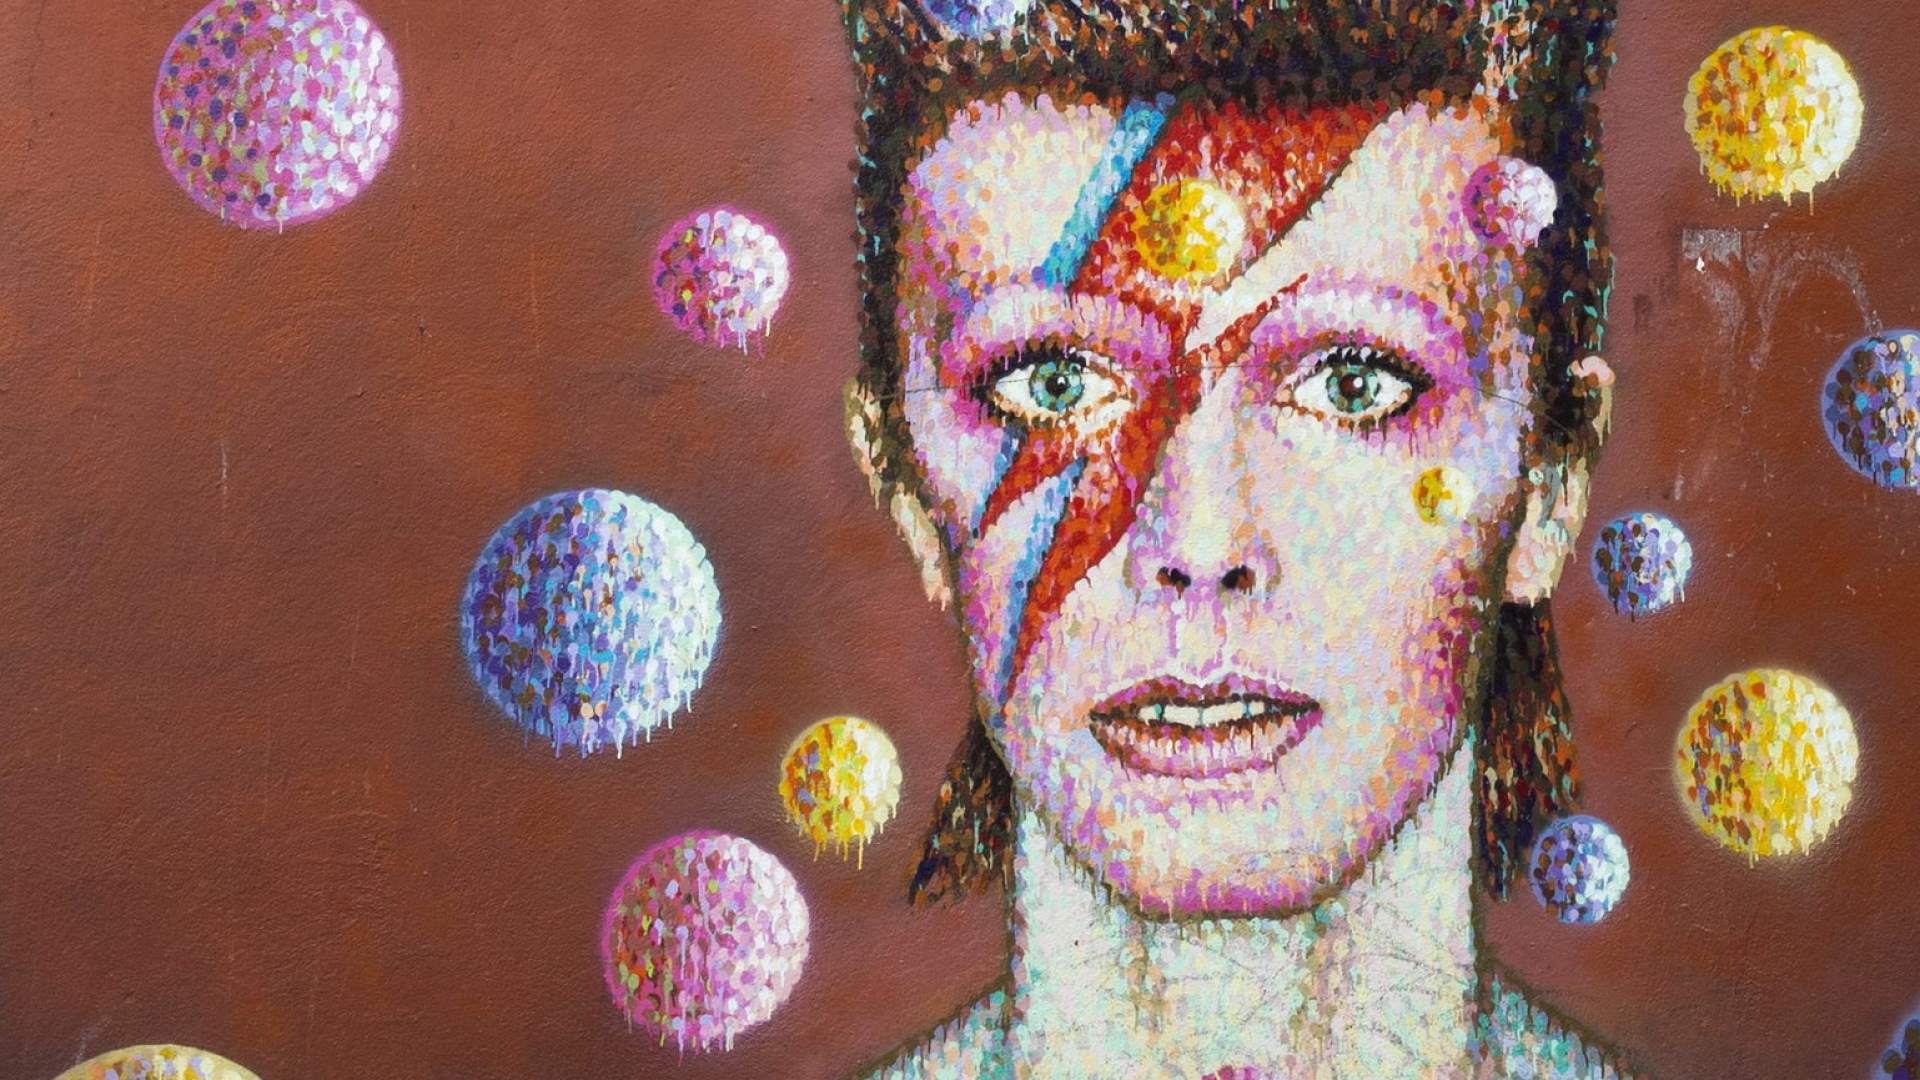 Ein riesiges buntes Wand-Portrait, das David Bowie zeigt | dpa